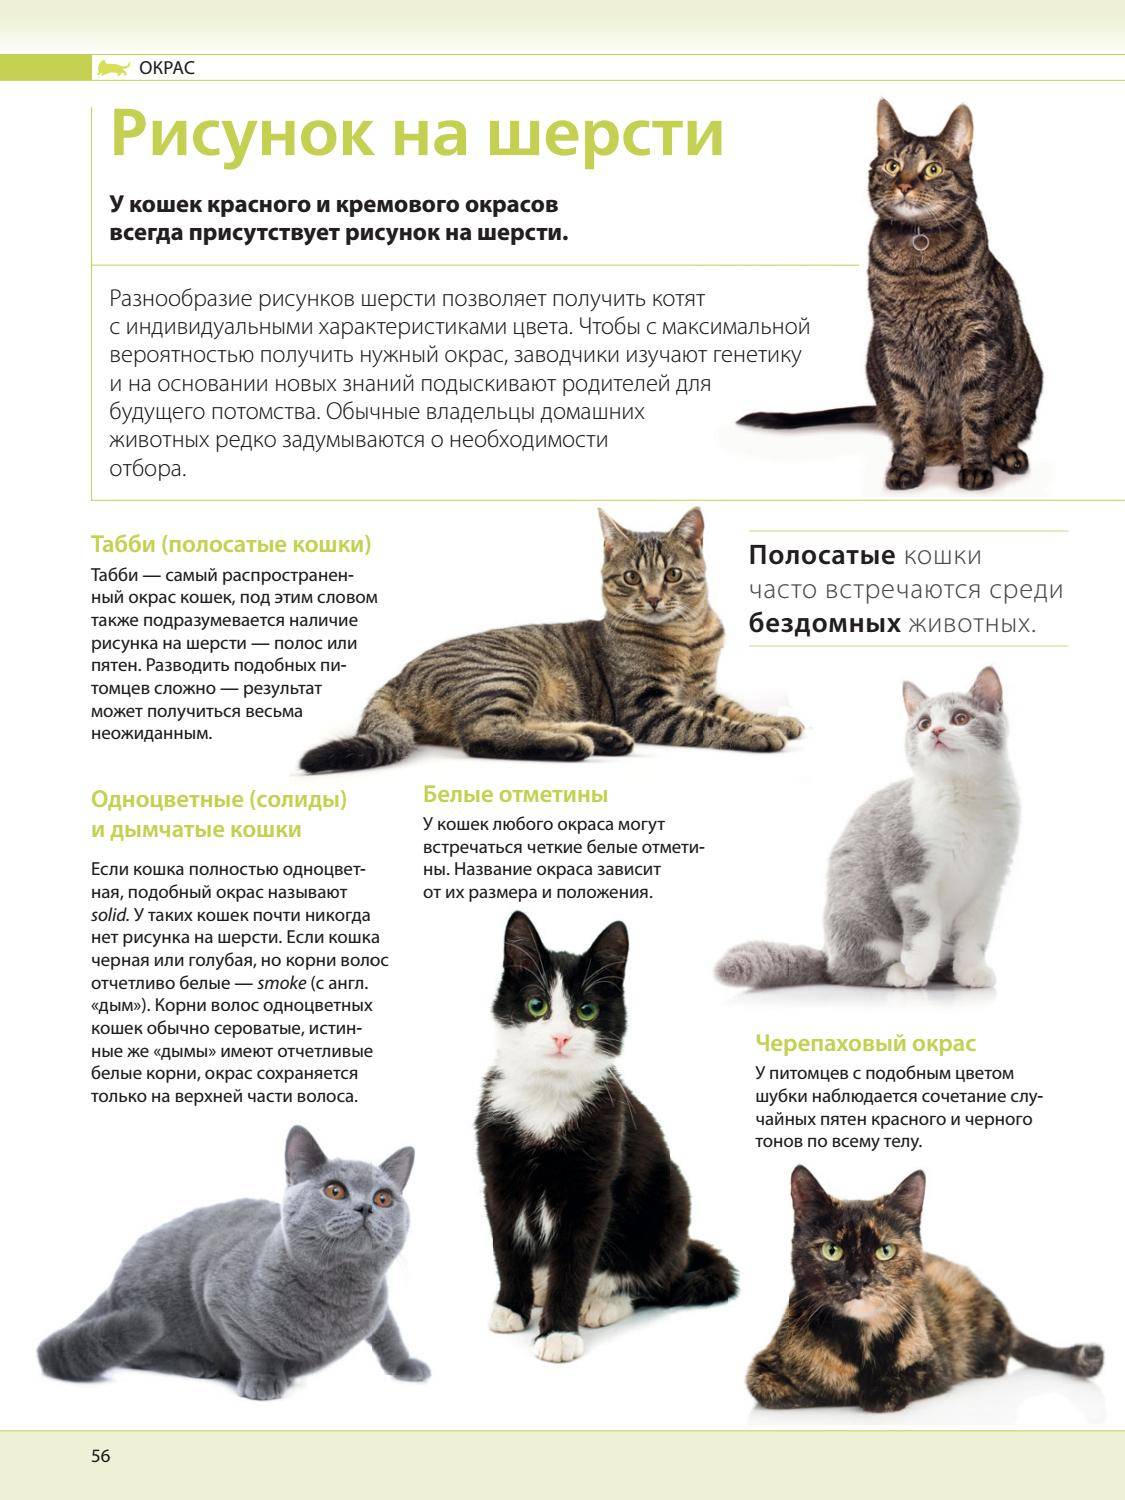 Самые умные породы кошек: какие представители семейства кошачьих входят в топ-10?